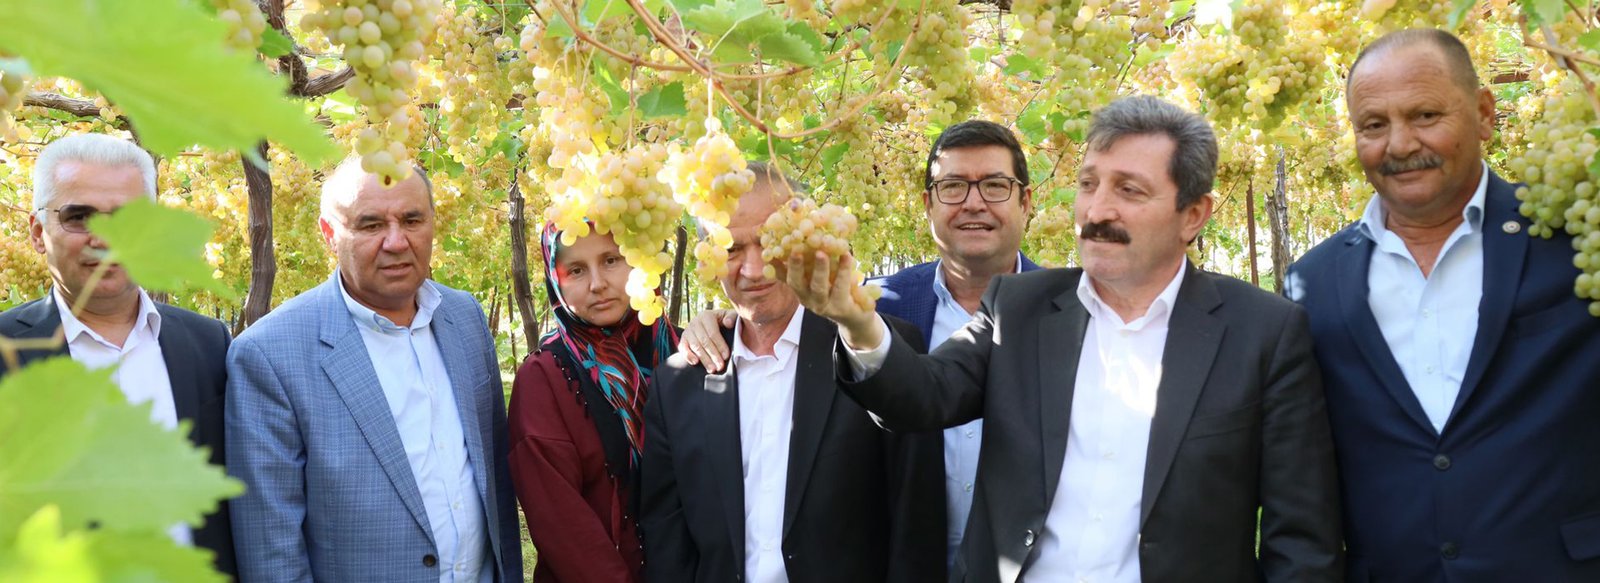 Üzümler Gelin Oldu! - Muğla'daki Bağ Bozumu Şenliği